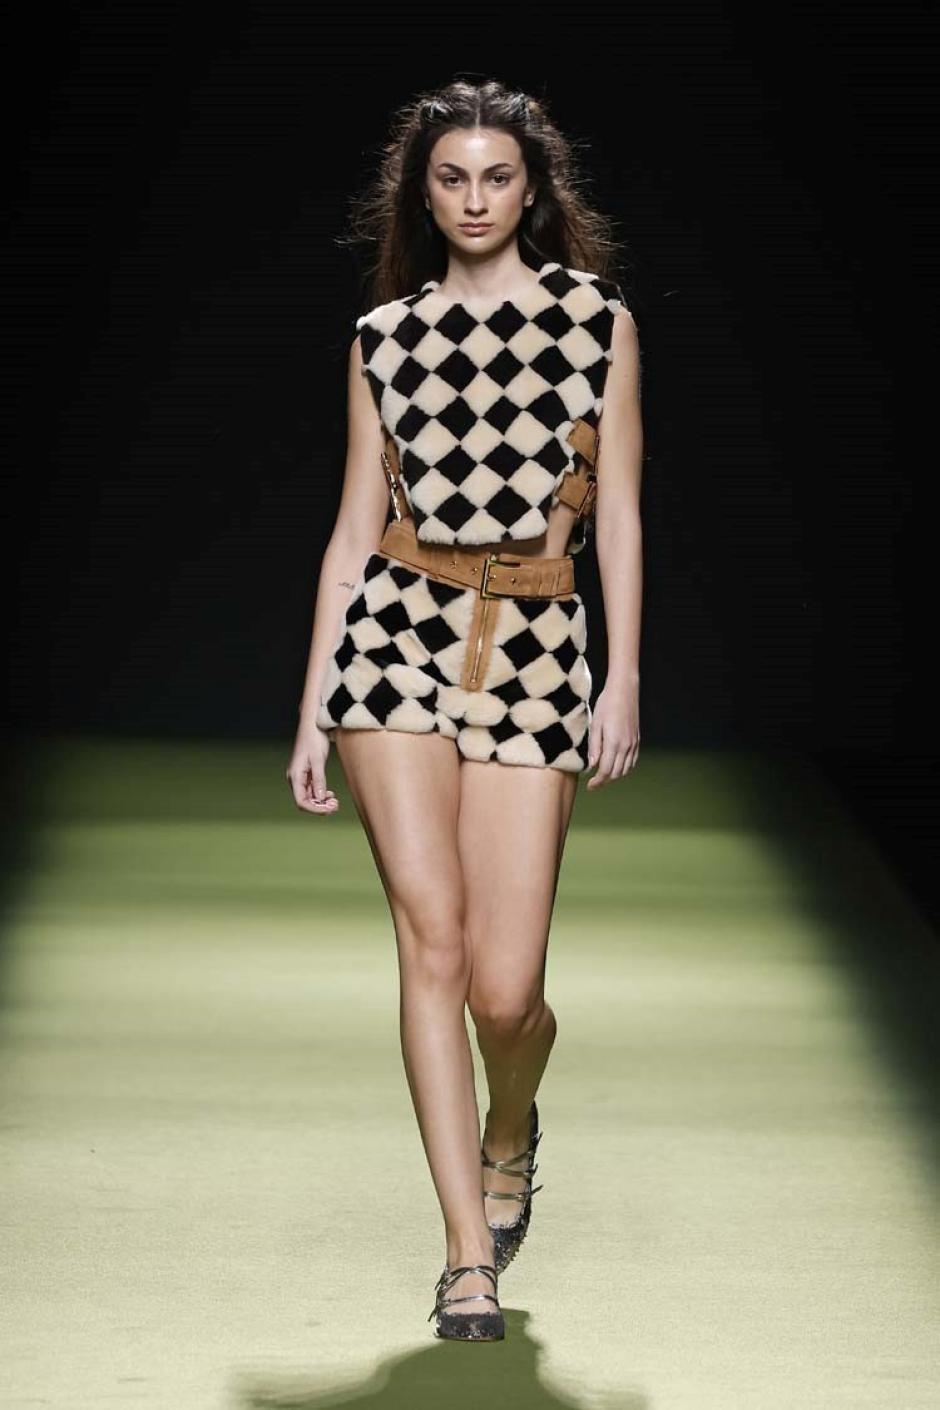 Otra imagen de la colección de Teresa Helbig mostrada en la Semana de la Moda de Madrid